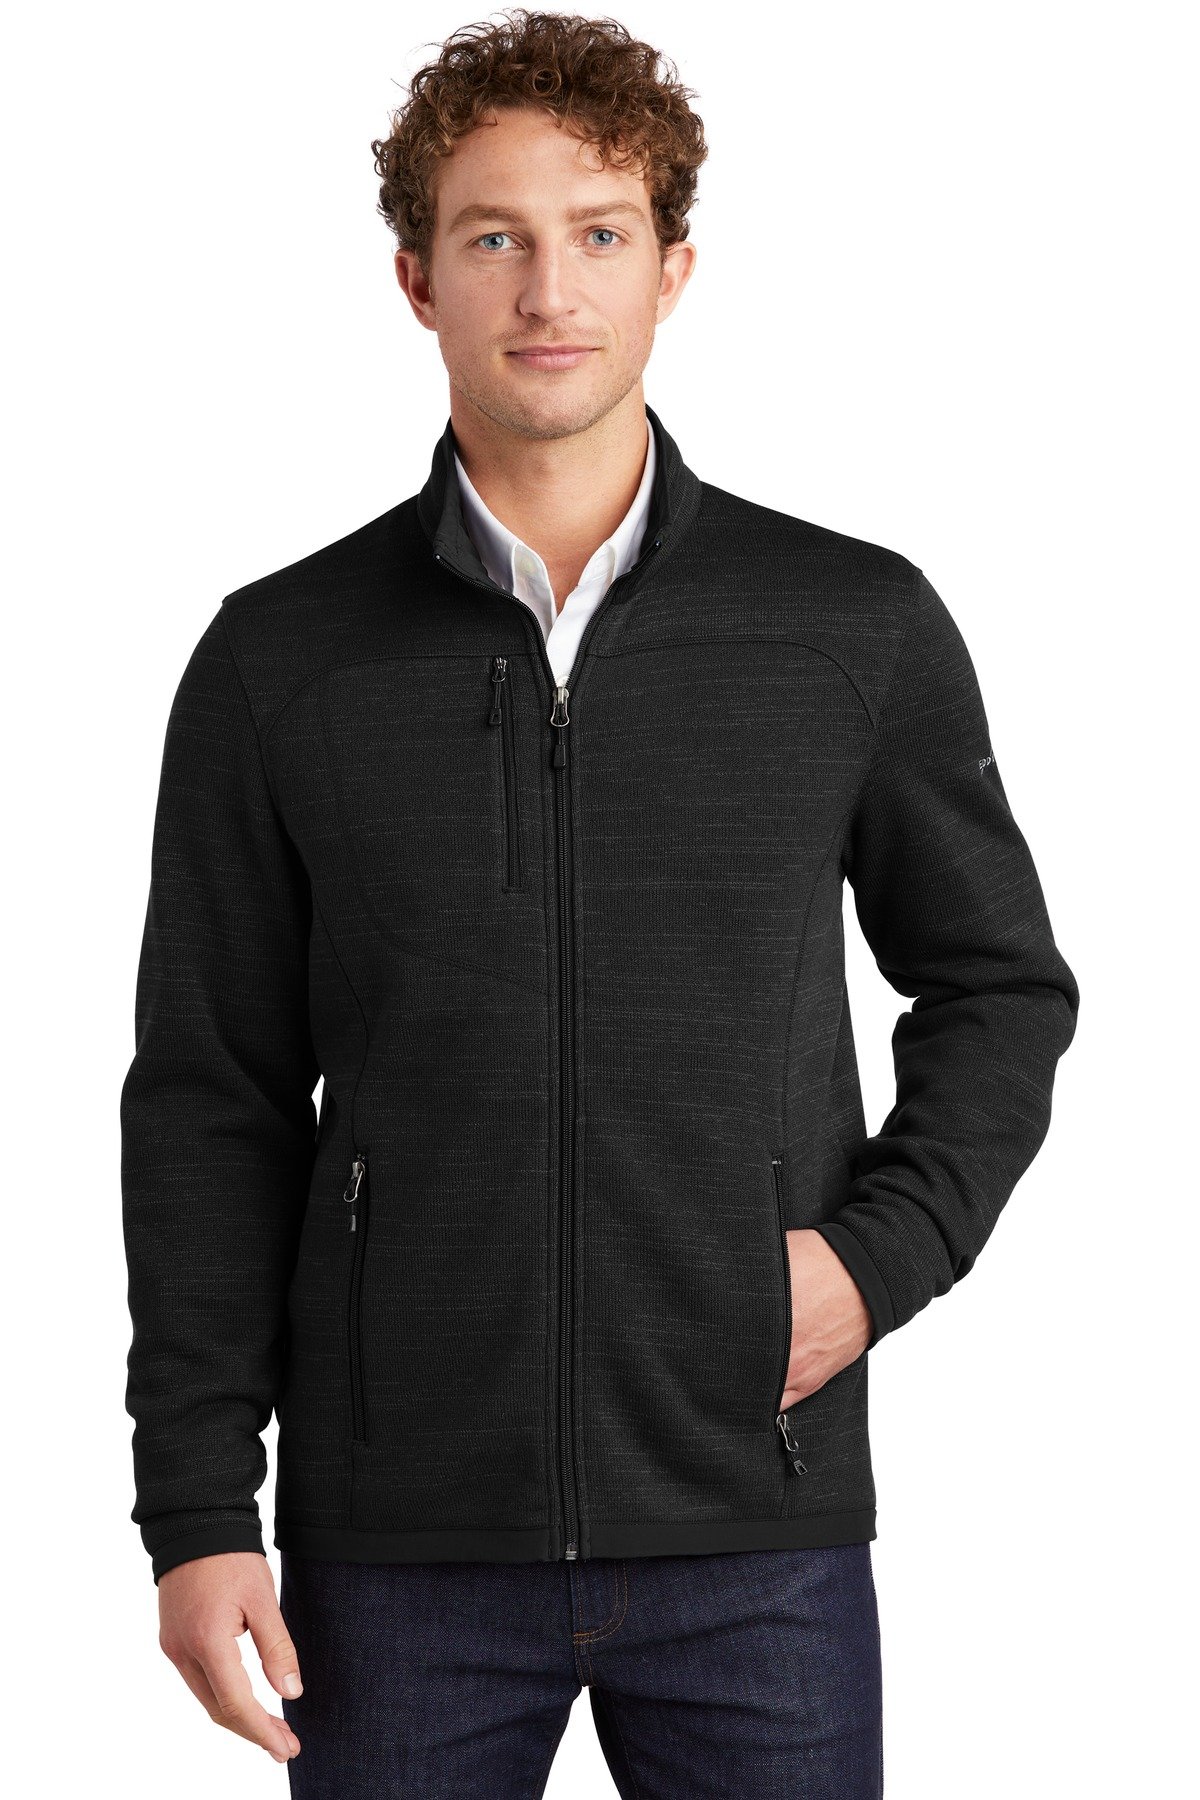 Front view of Sweater Fleece Full-Zip